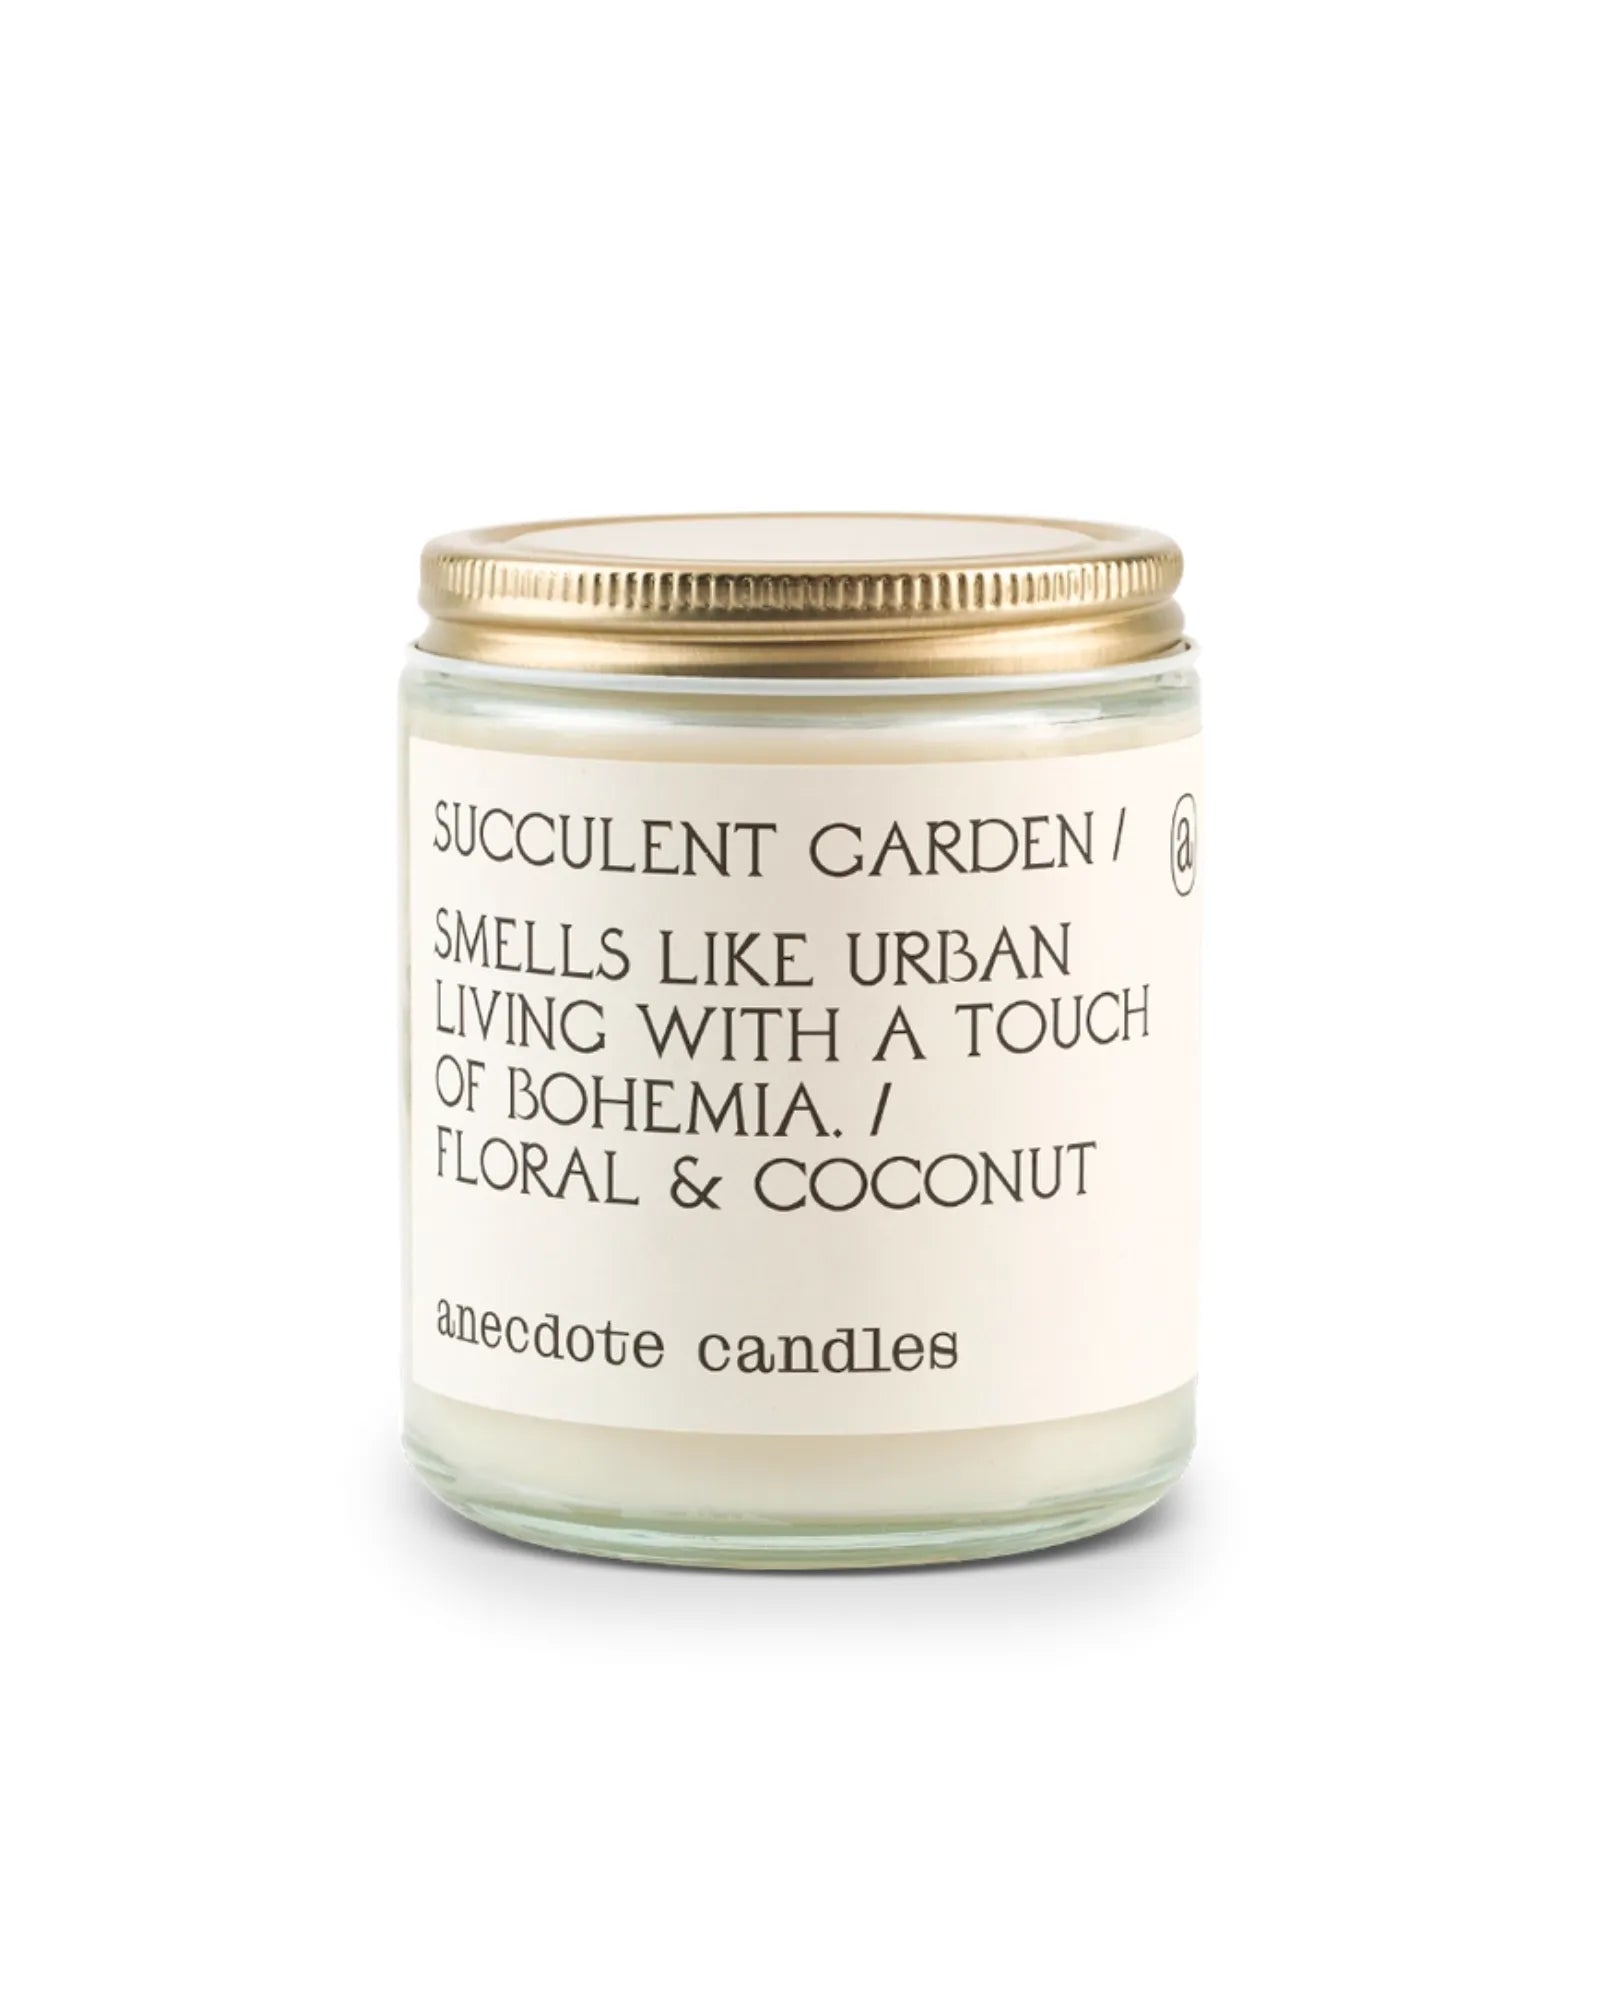 Succulent Garden (Floral & Coconut) 7.8 oz Candle